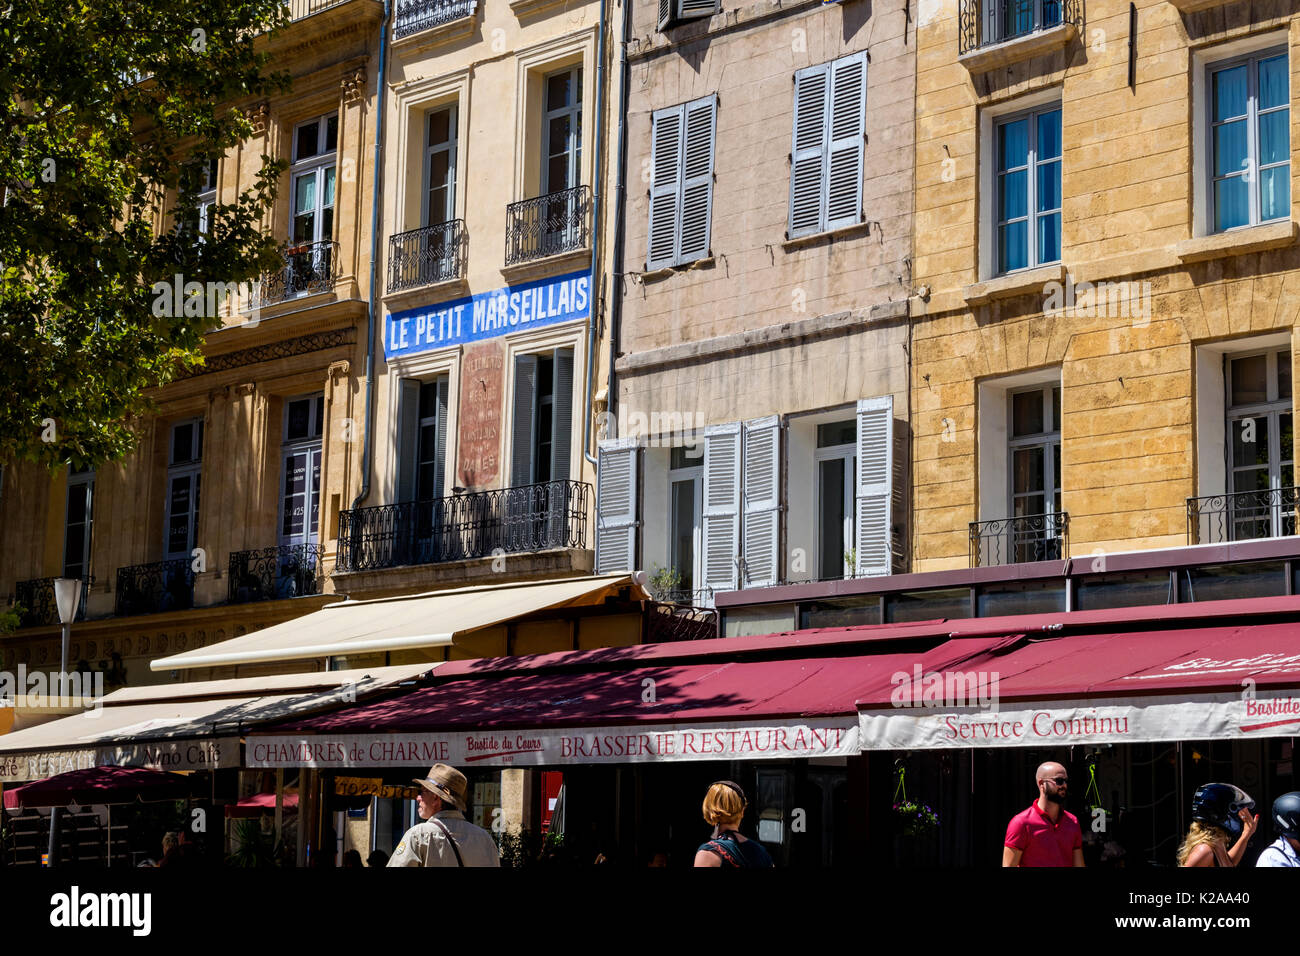 Aix-en-Provence, Provence-Alpes-Côte d'Azur, regione a sud della Francia. Architettura, brasserie e cafe bar ristoranti. Cours Mirabeau. Foto Stock